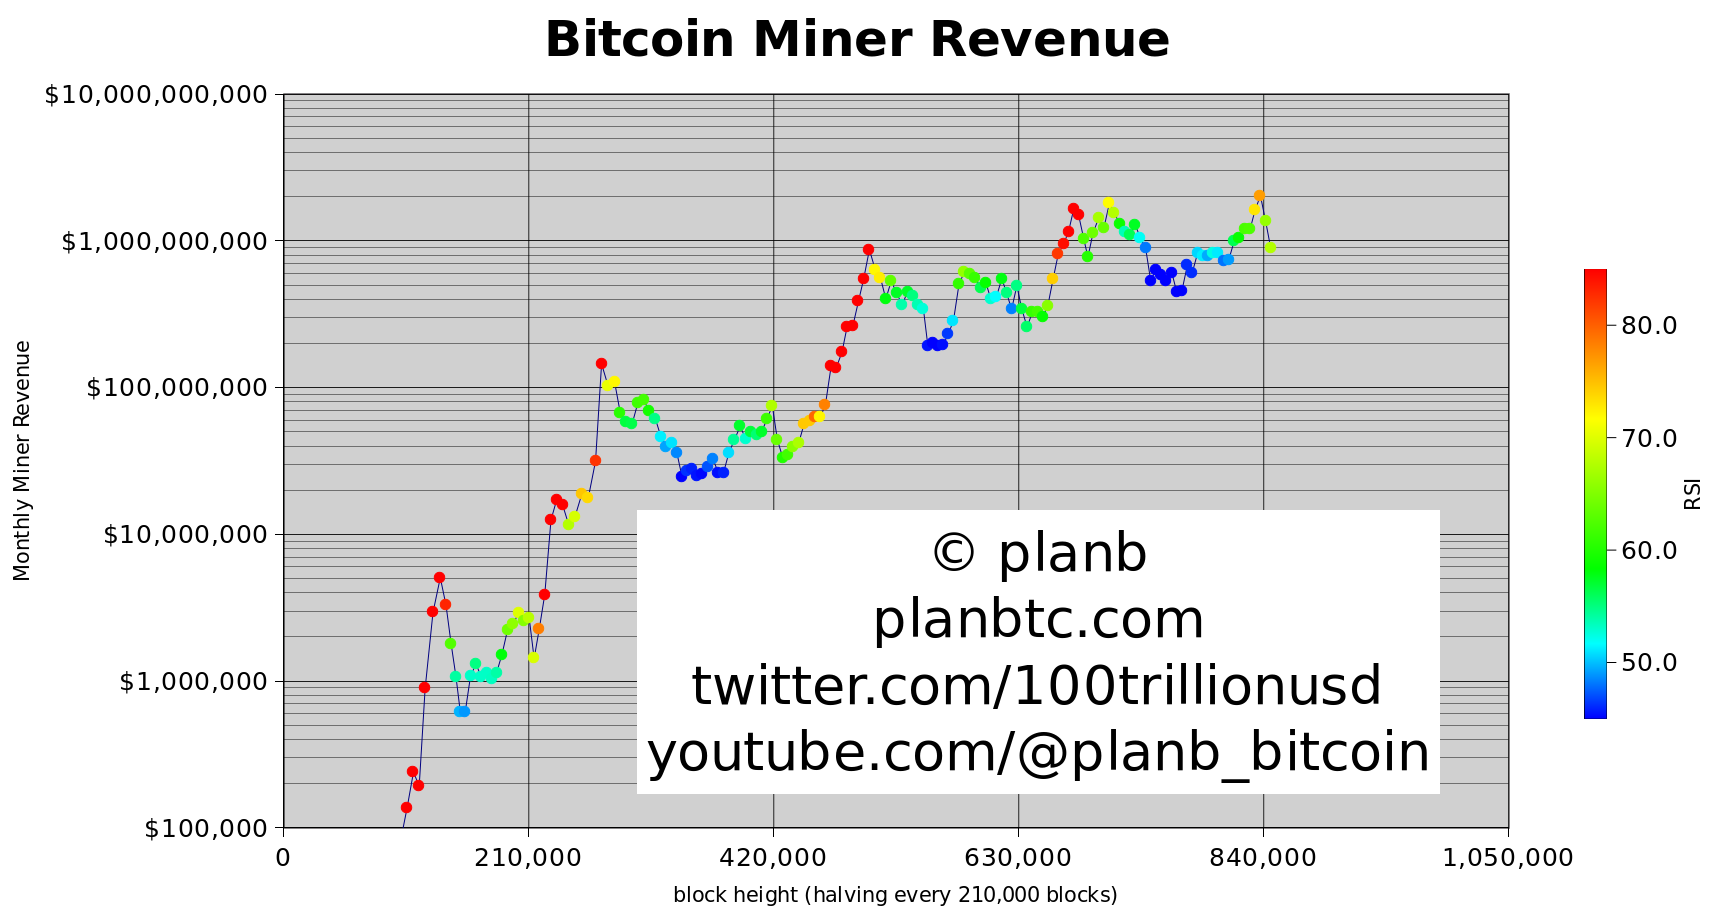 PlanB: Veniturile minerilor Bitcoin se refac în 2-5 luni după halving